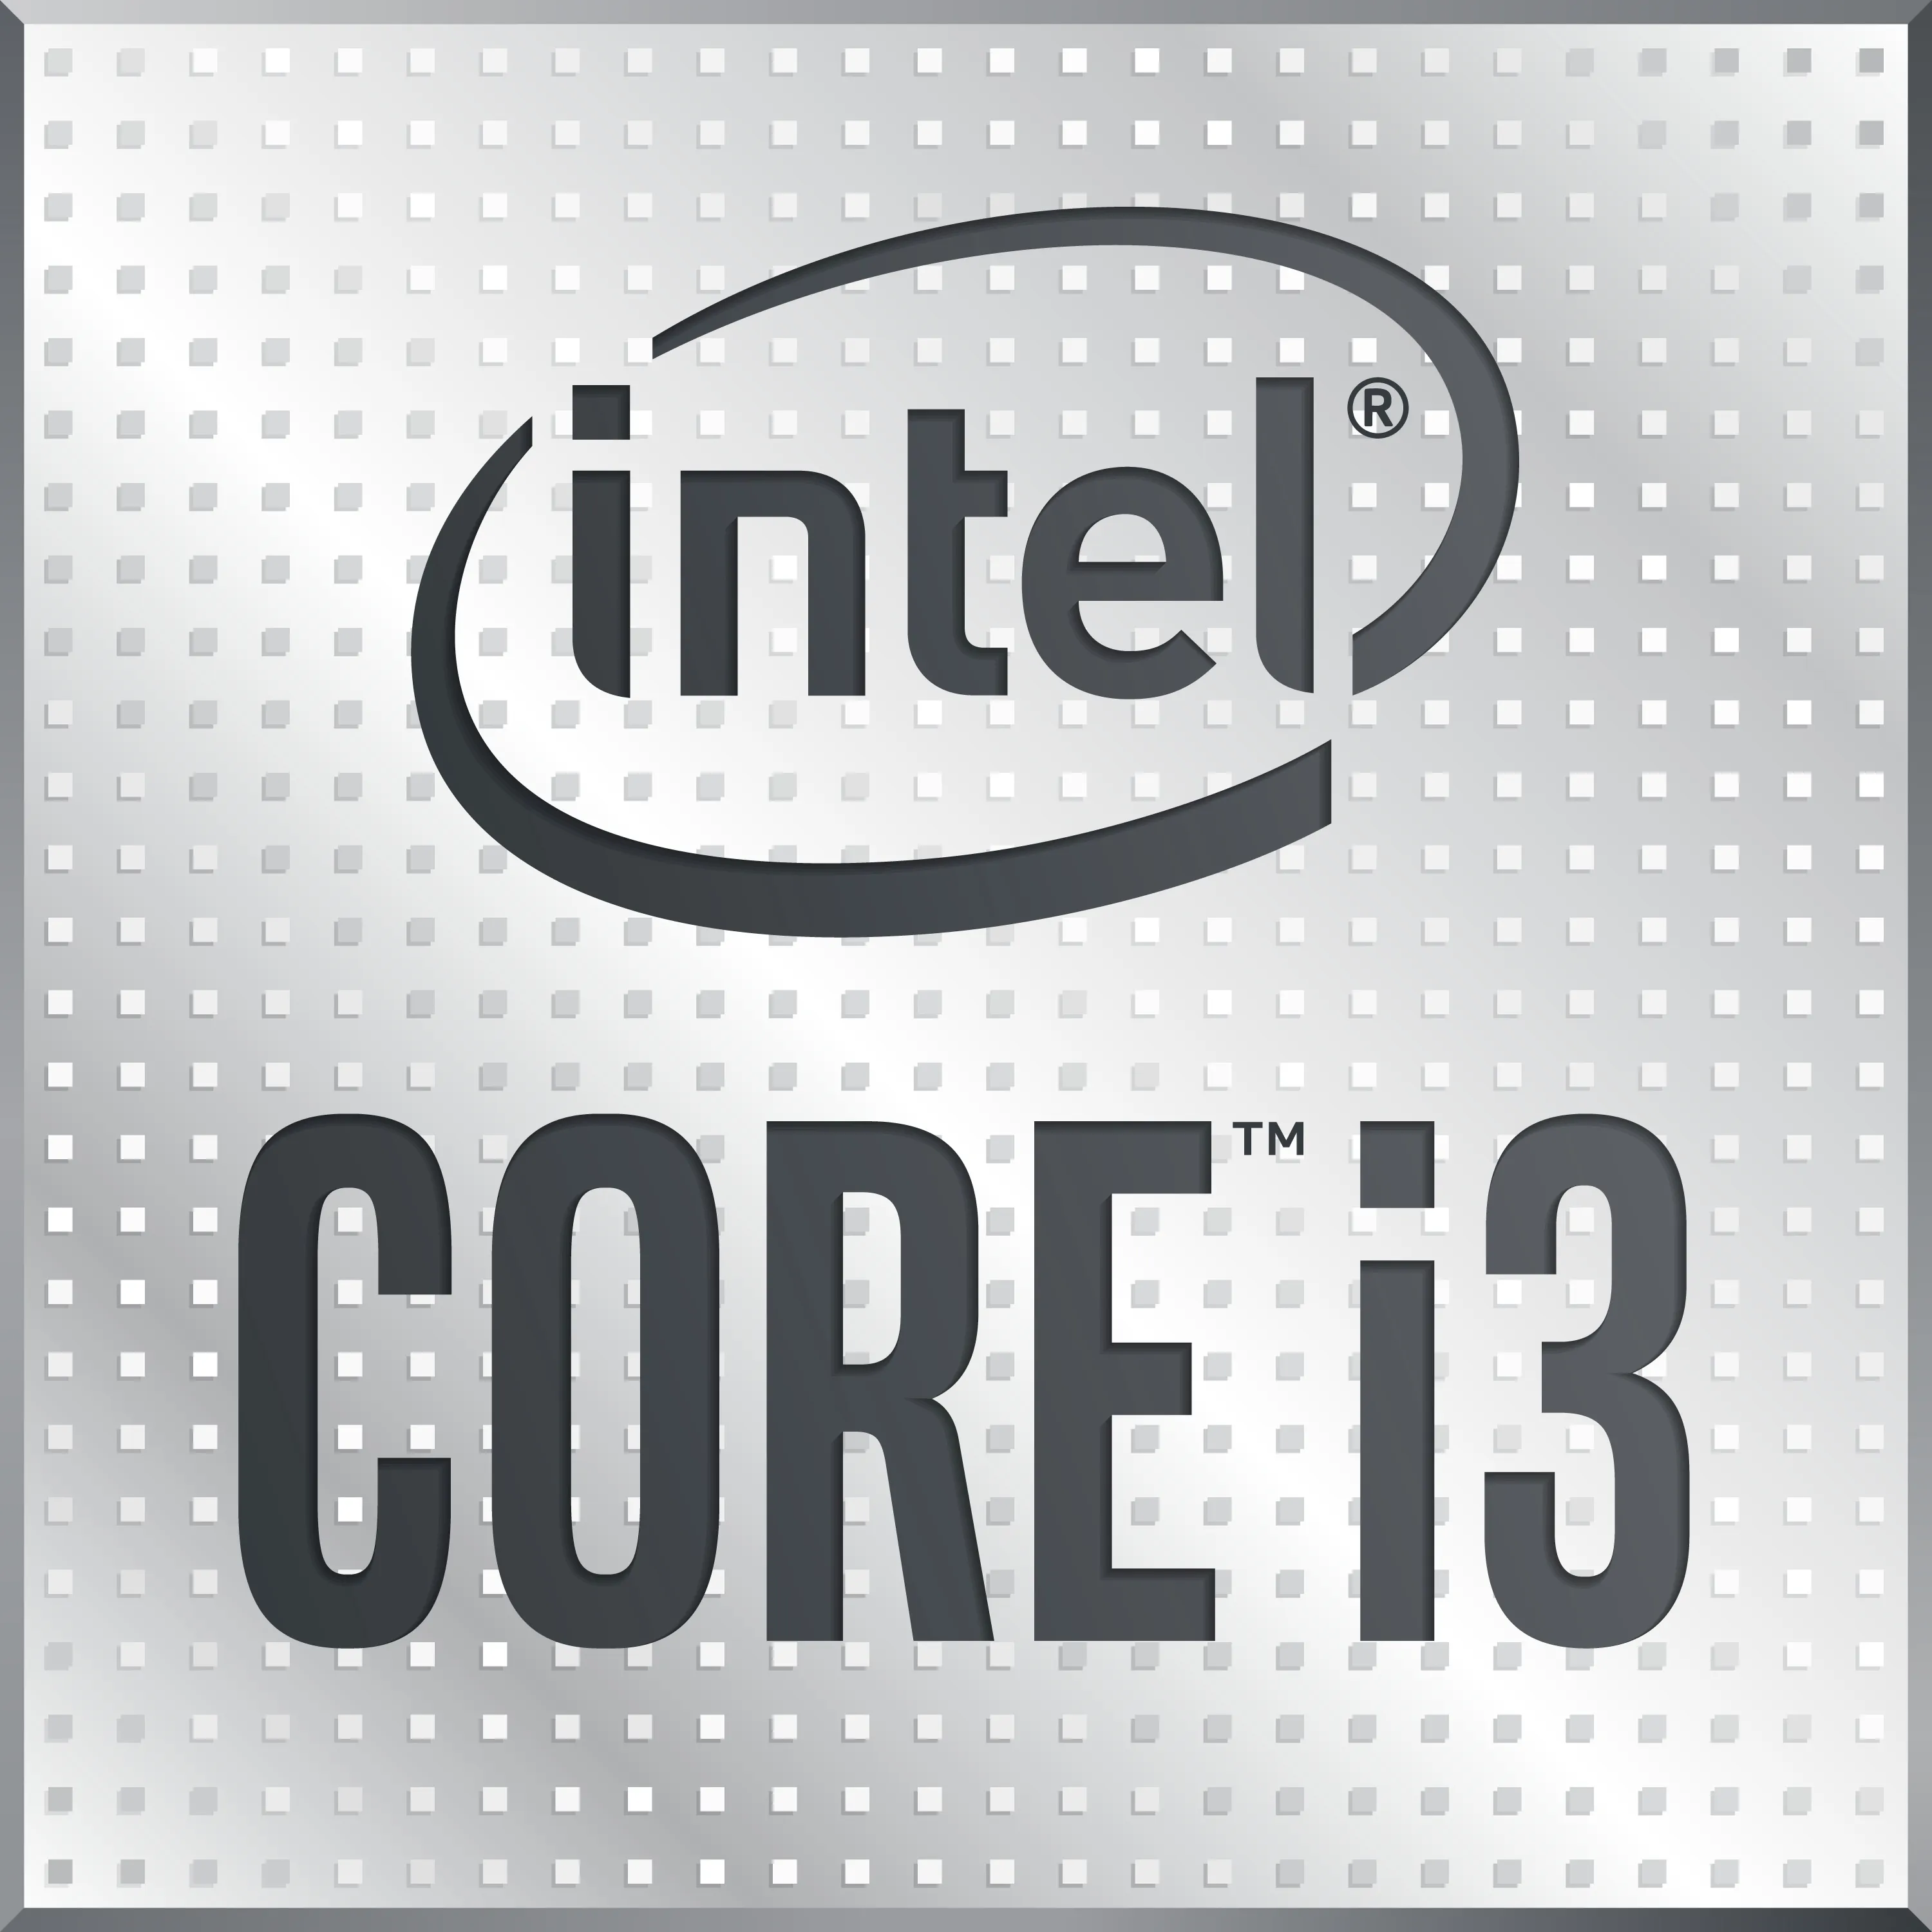 Vente INTEL Core i3-10105F 3.7GHz LGA1200 8M Cache CPU Intel au meilleur prix - visuel 2